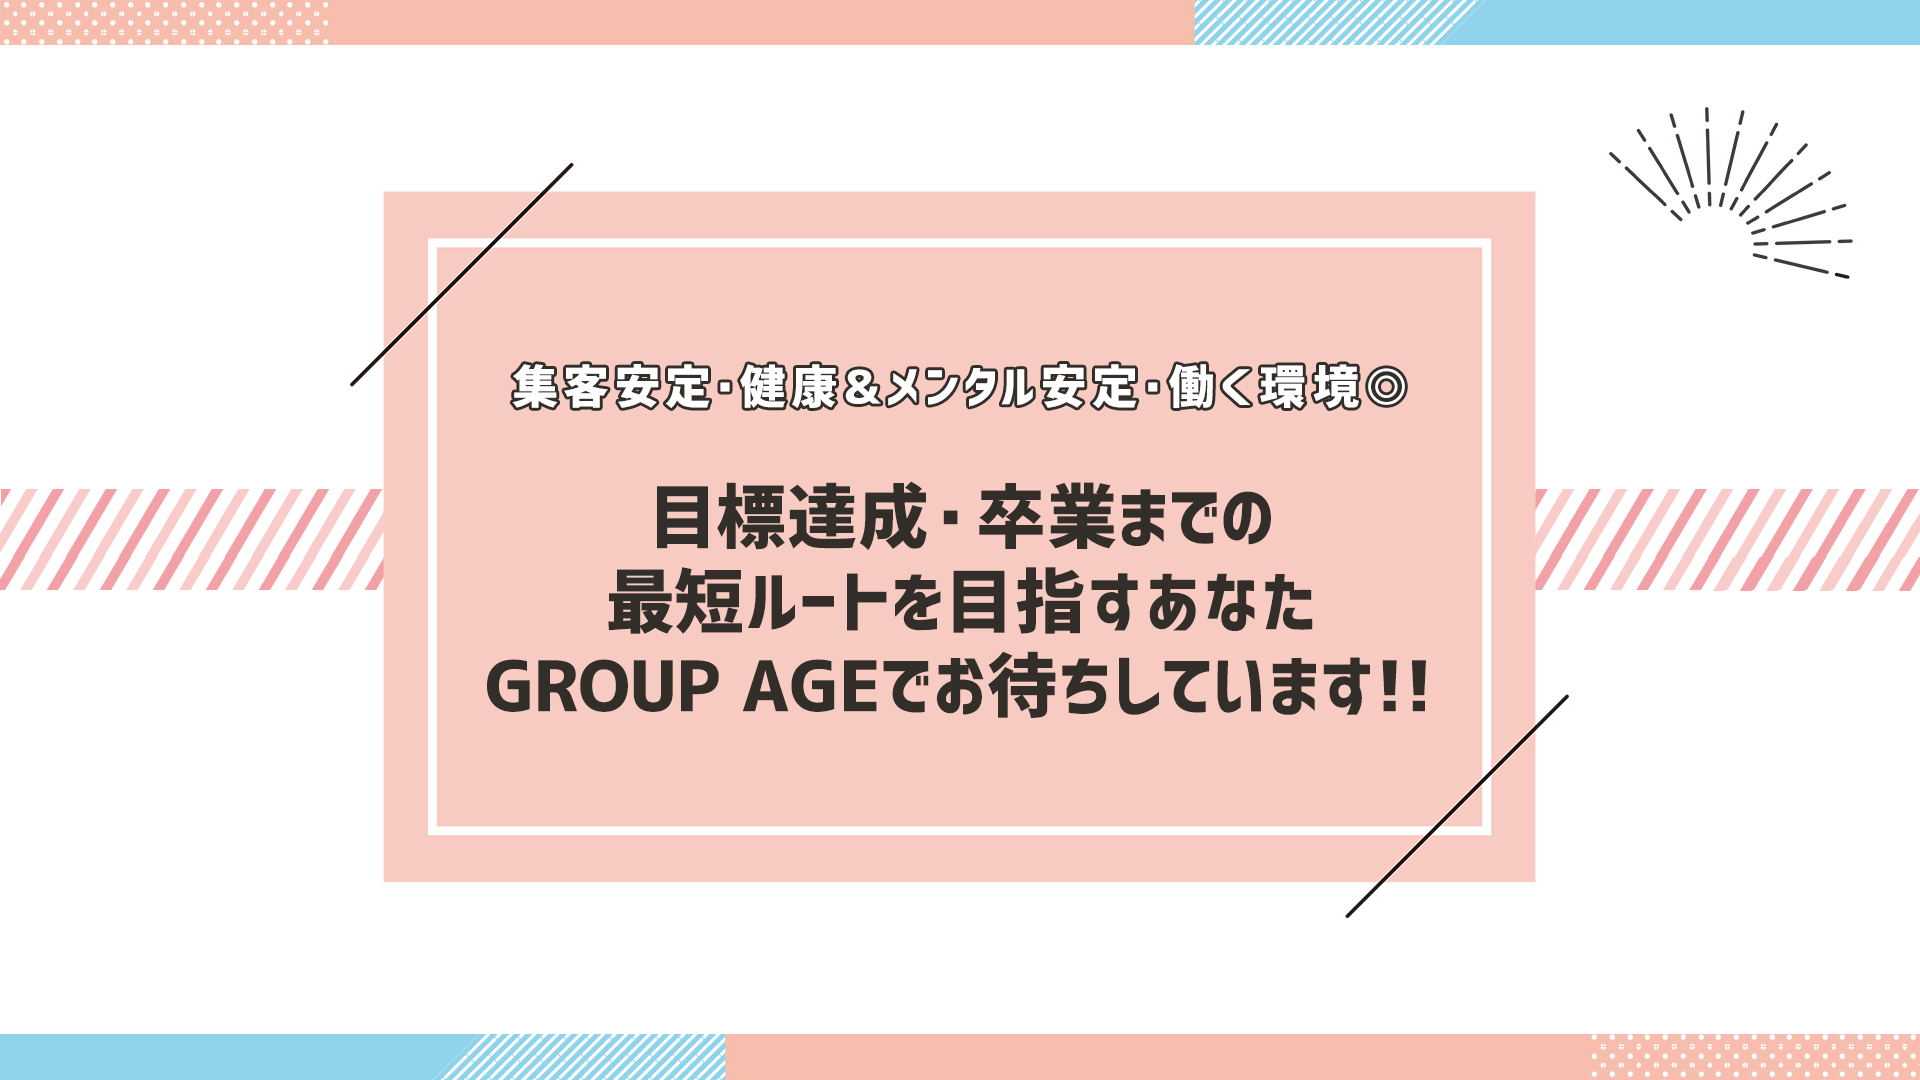 GROUP AGE－グループアージュ ショップ画像11